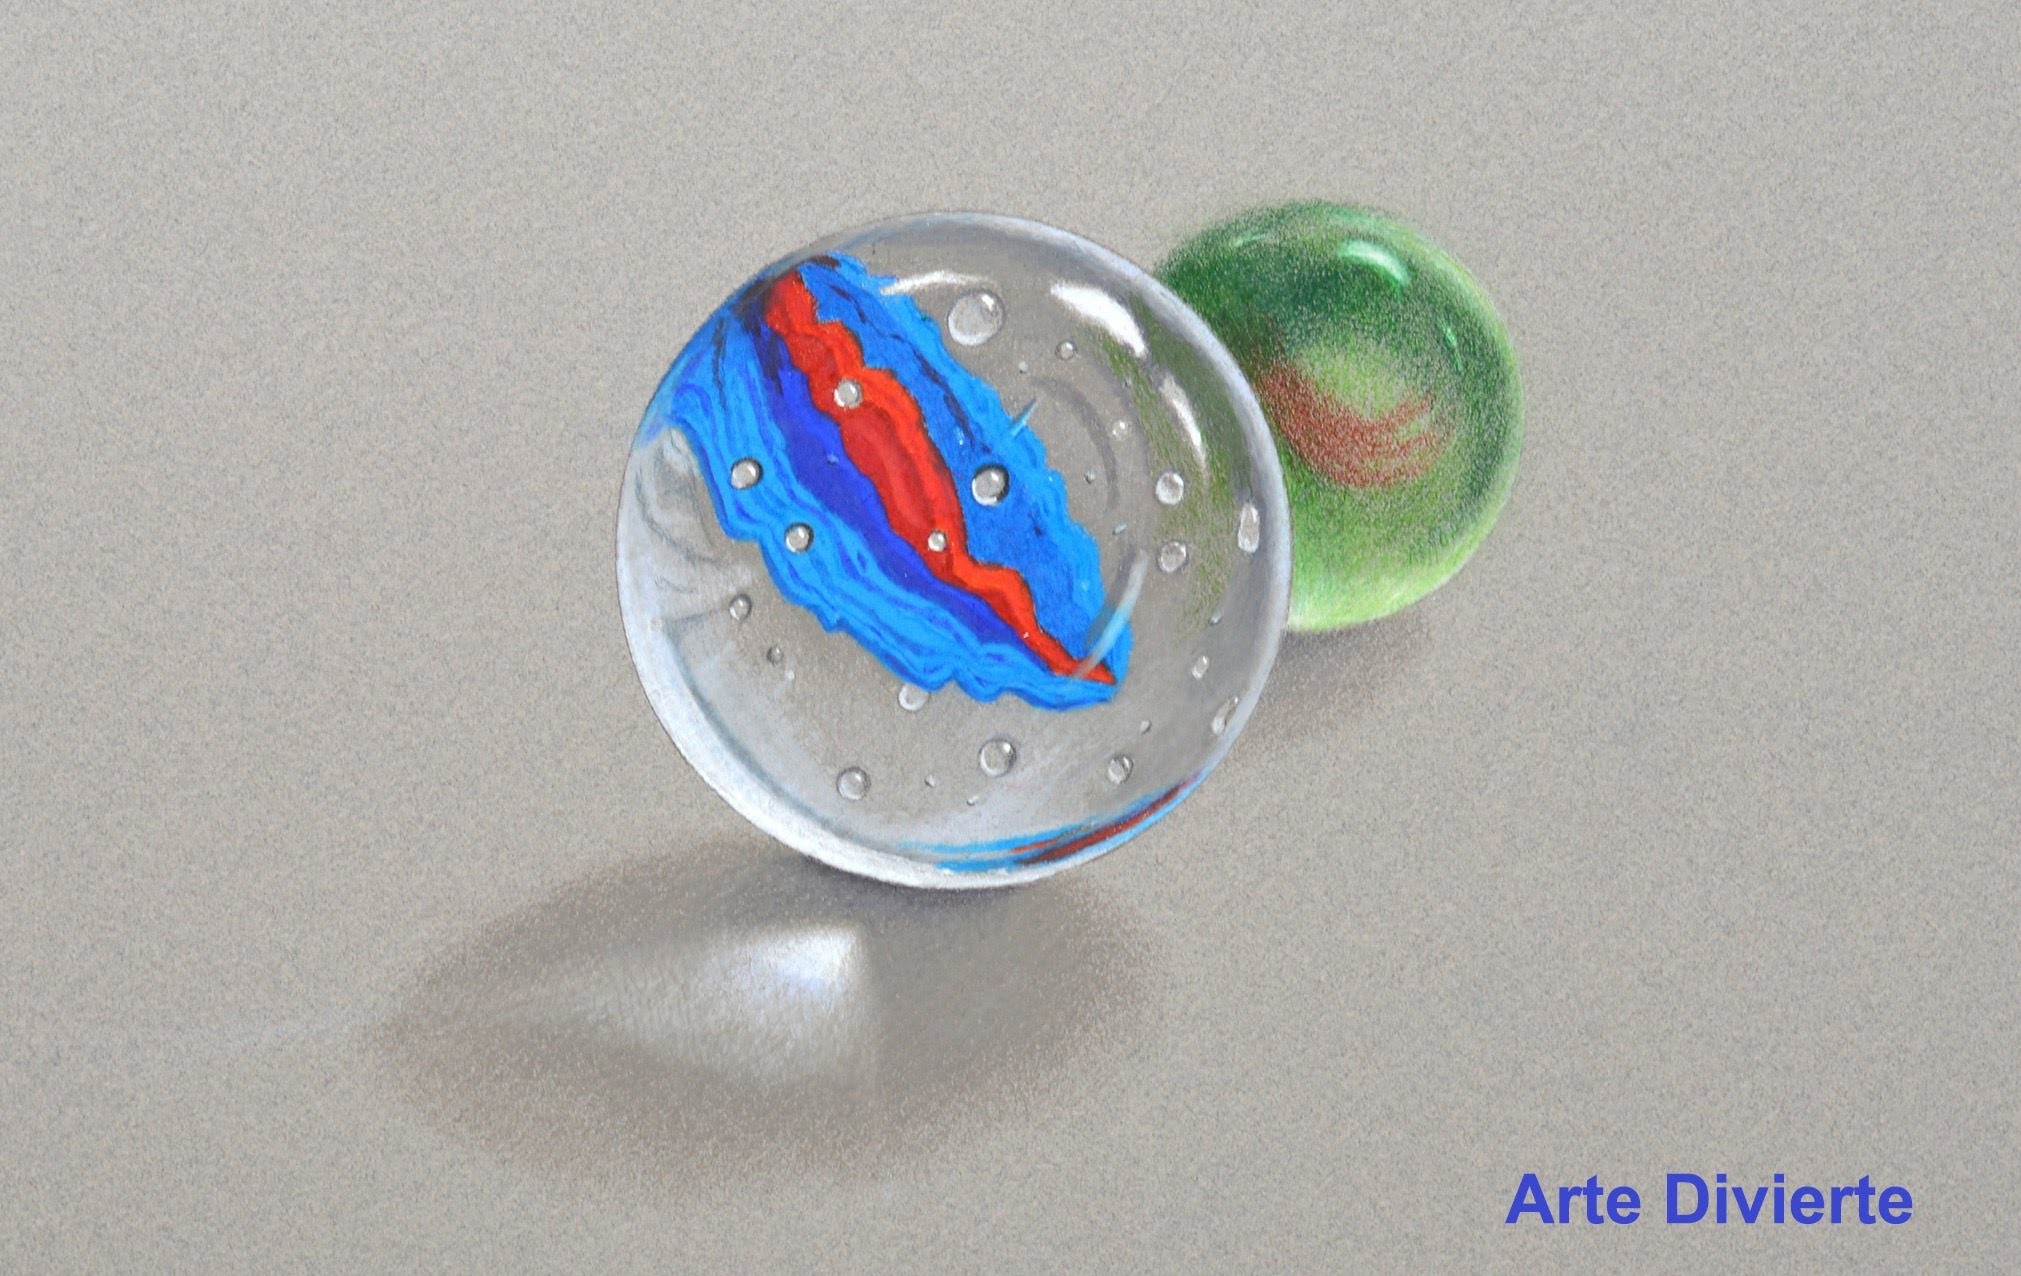 Dibujando vidrio o cristal: cómo dibujar canicas - Arte Divierte.